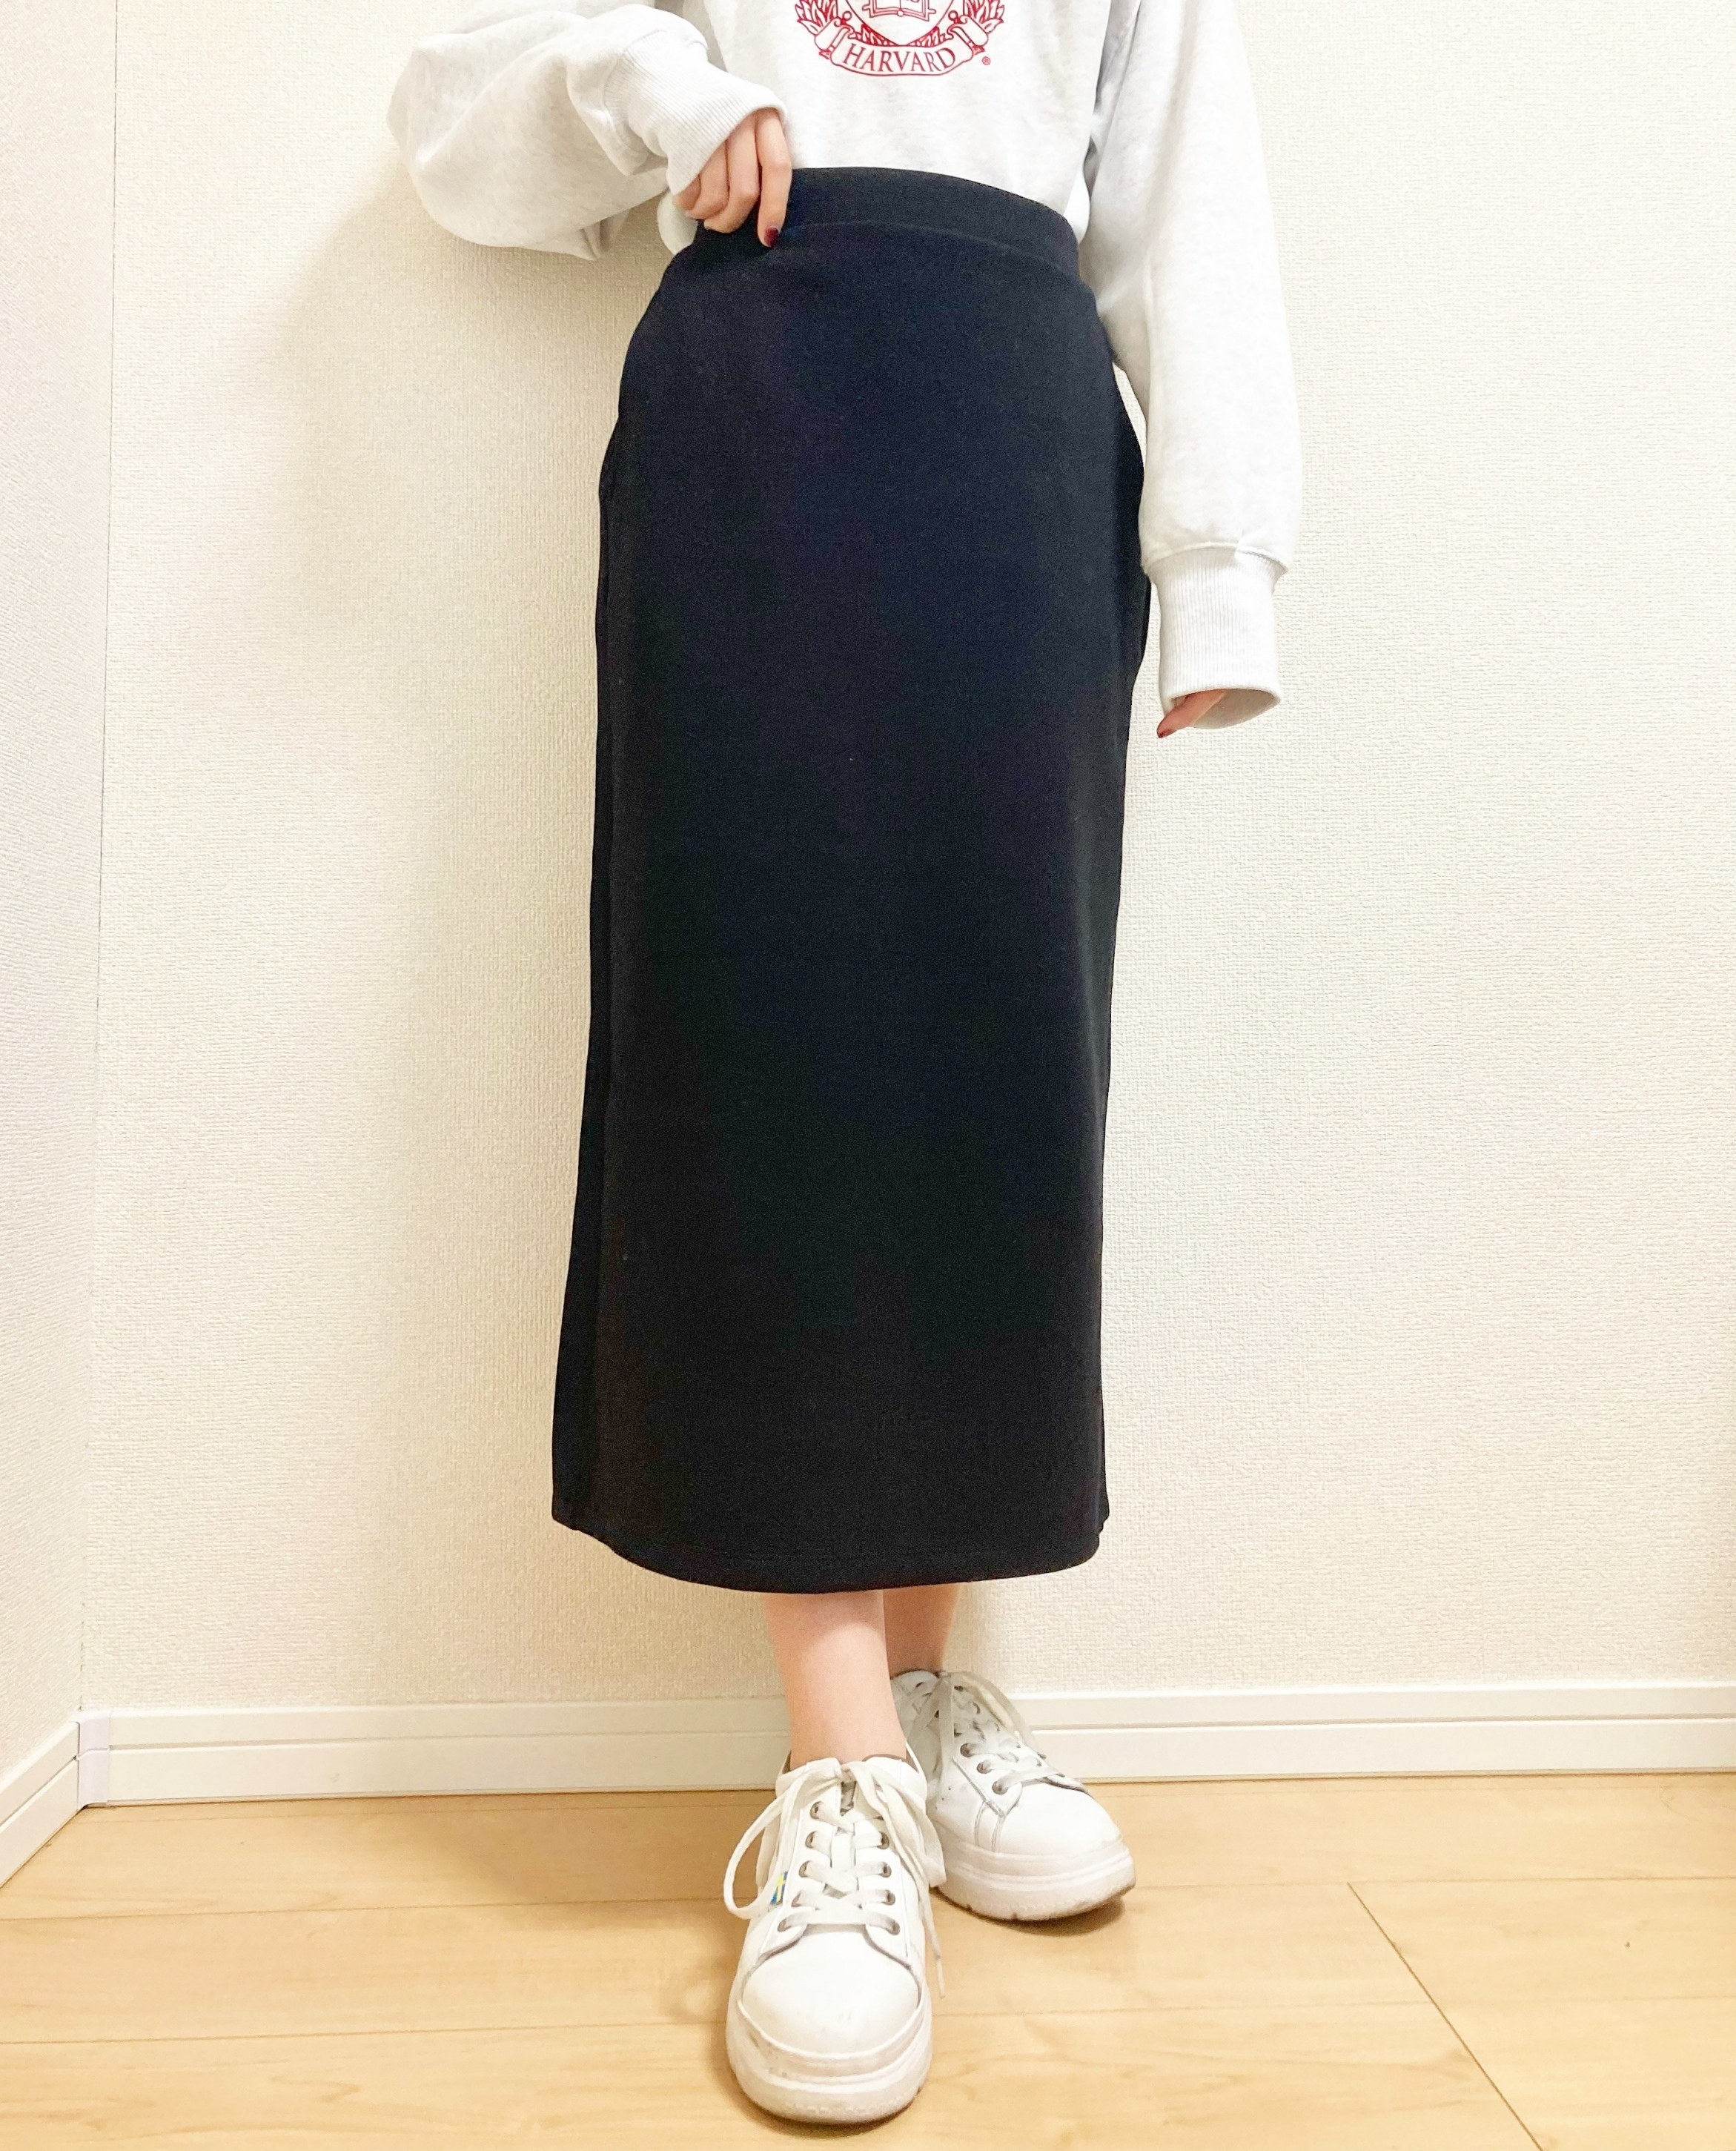 GU（ジーユー）のおすすめレディースファッション「カットソーナローミディスカート」のコーディネート